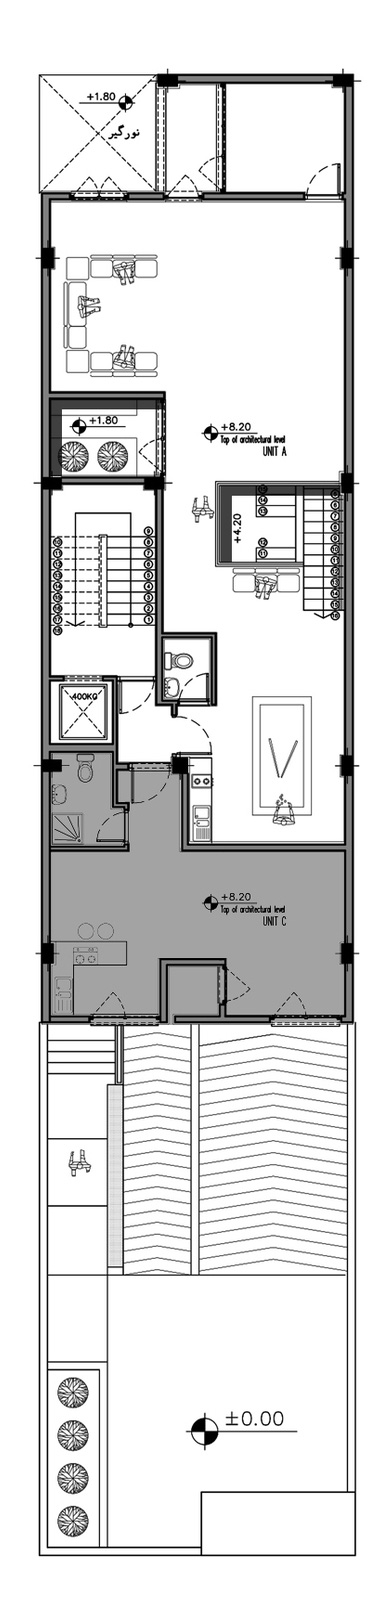 Second Floor Plan of Juan Apartment